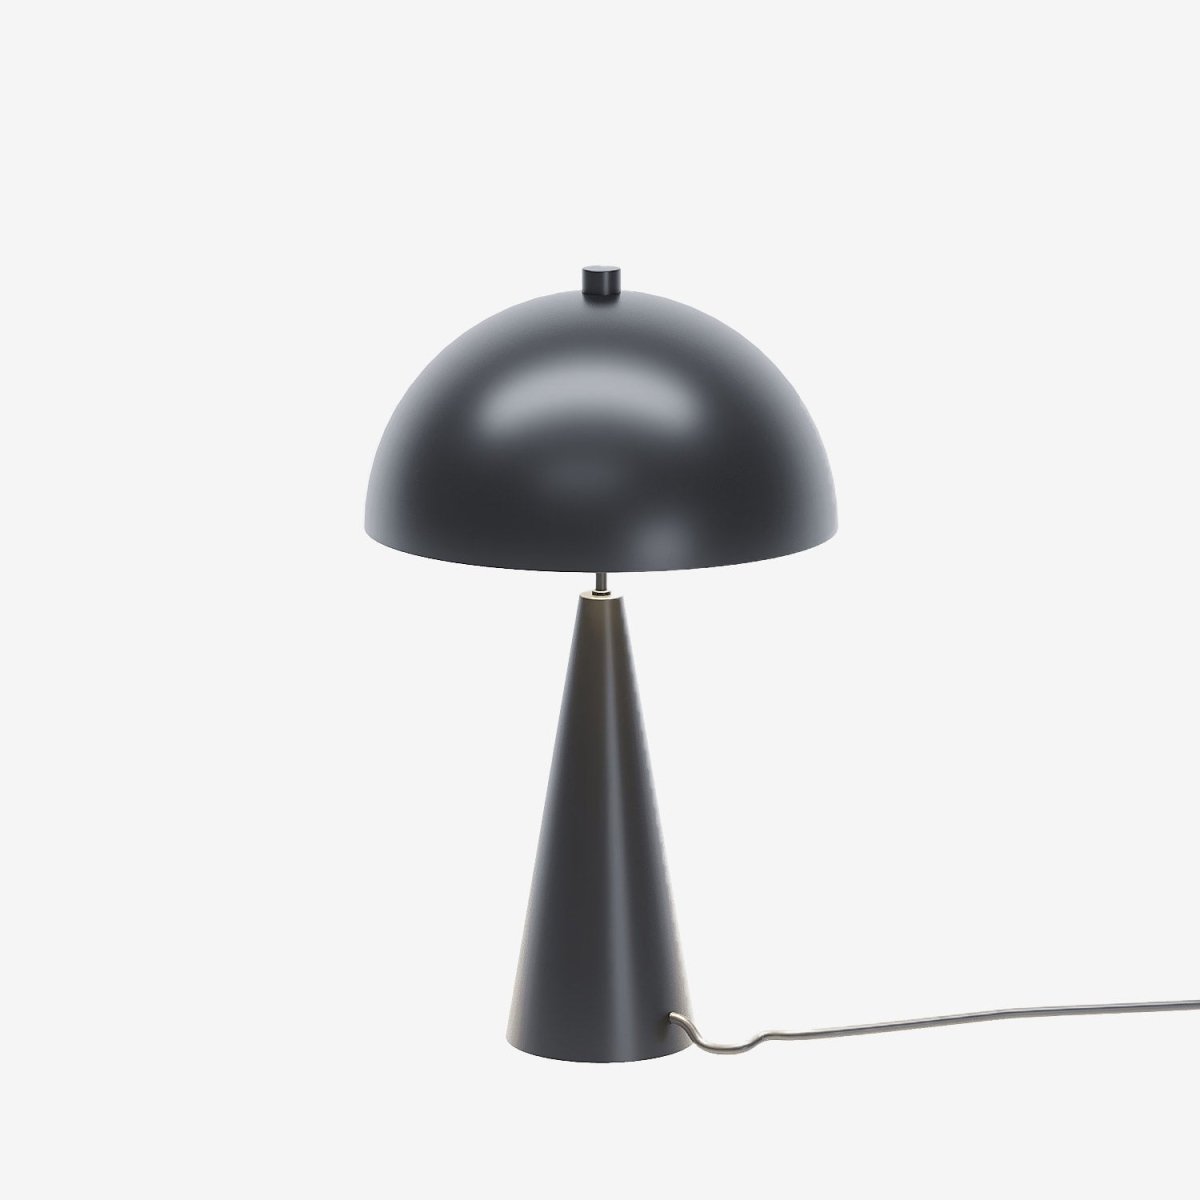 Lampe de chevet champignon style industriel métal noir - Potiron Paris, le luminaire design de la décoration d'intérieur chic et moderne pas chère